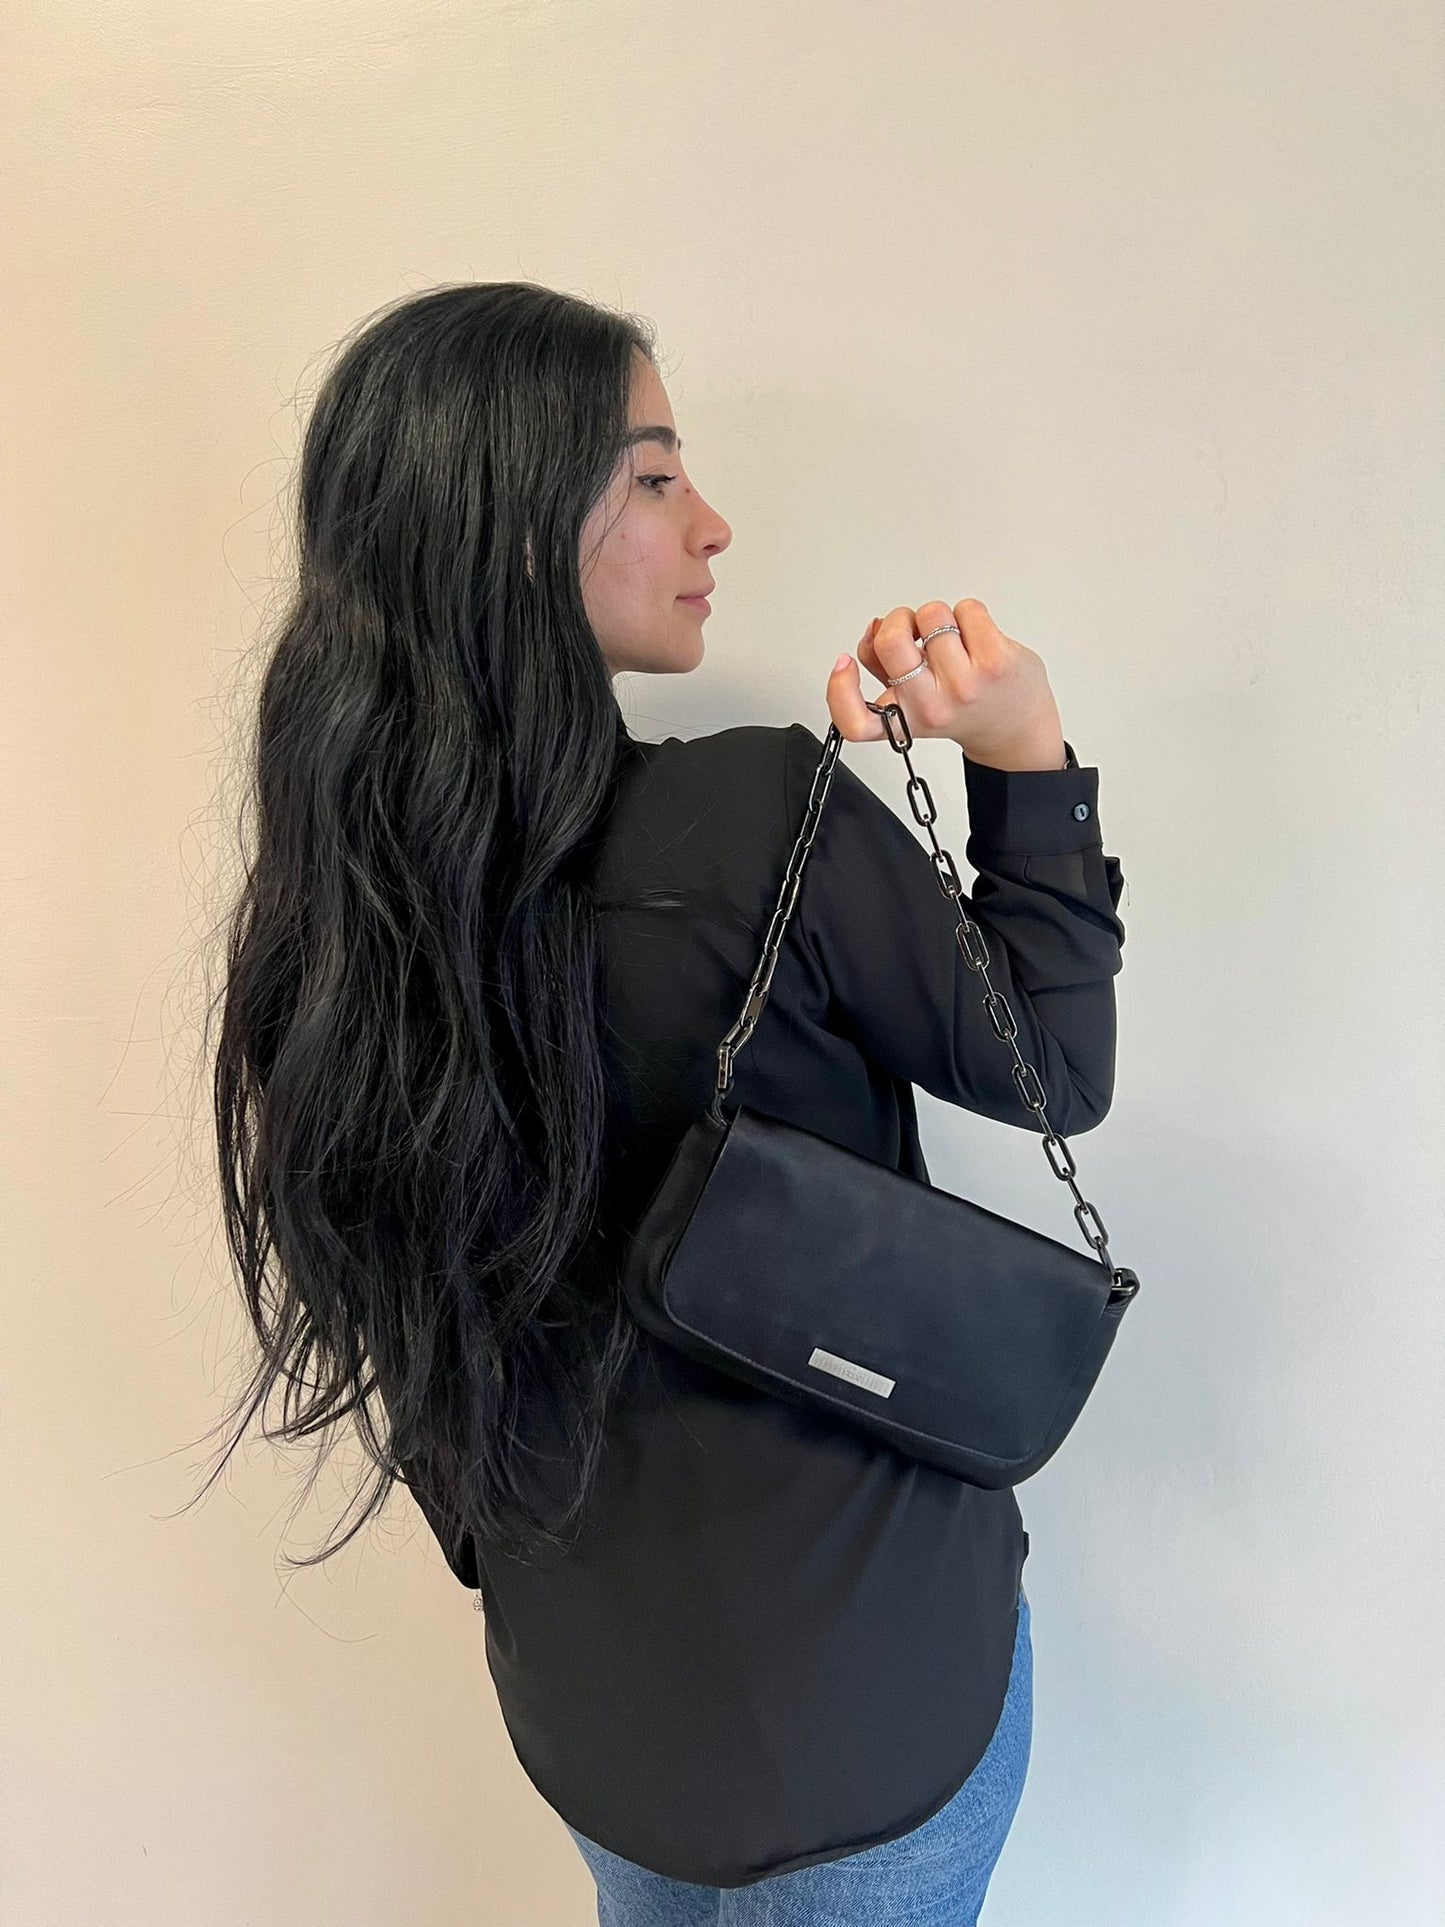 Foto borsa Gucci in tessuto raso nero. Borse di marca usate.